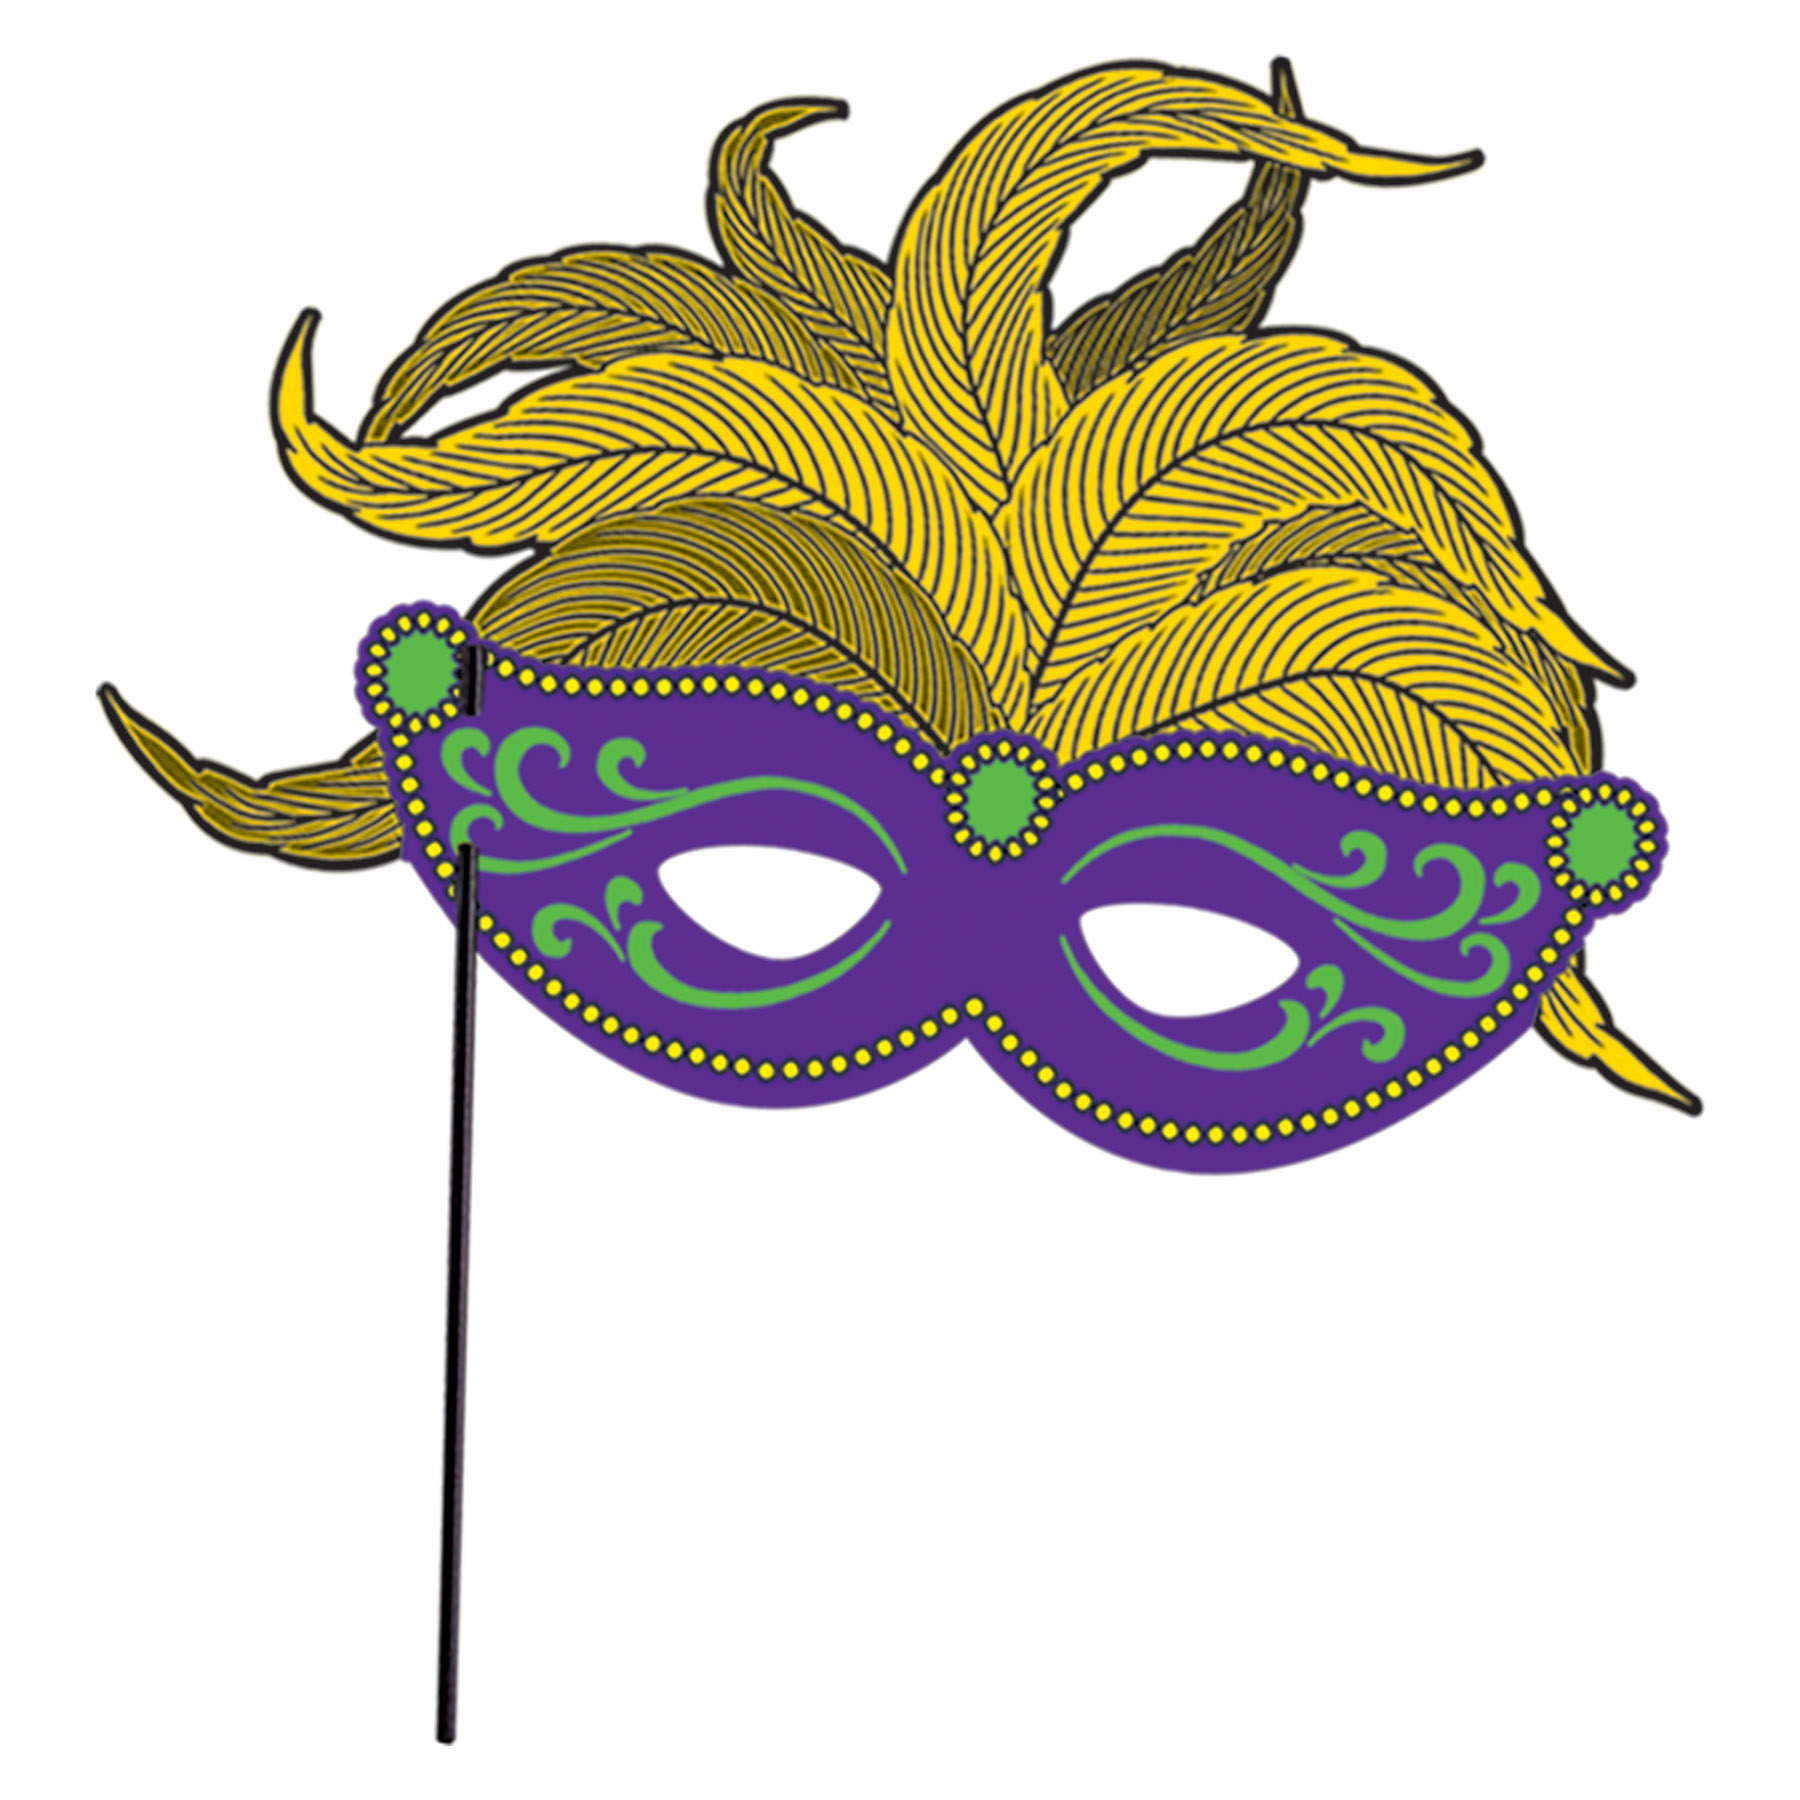 Mardi Gras (Hat Mask Balloon